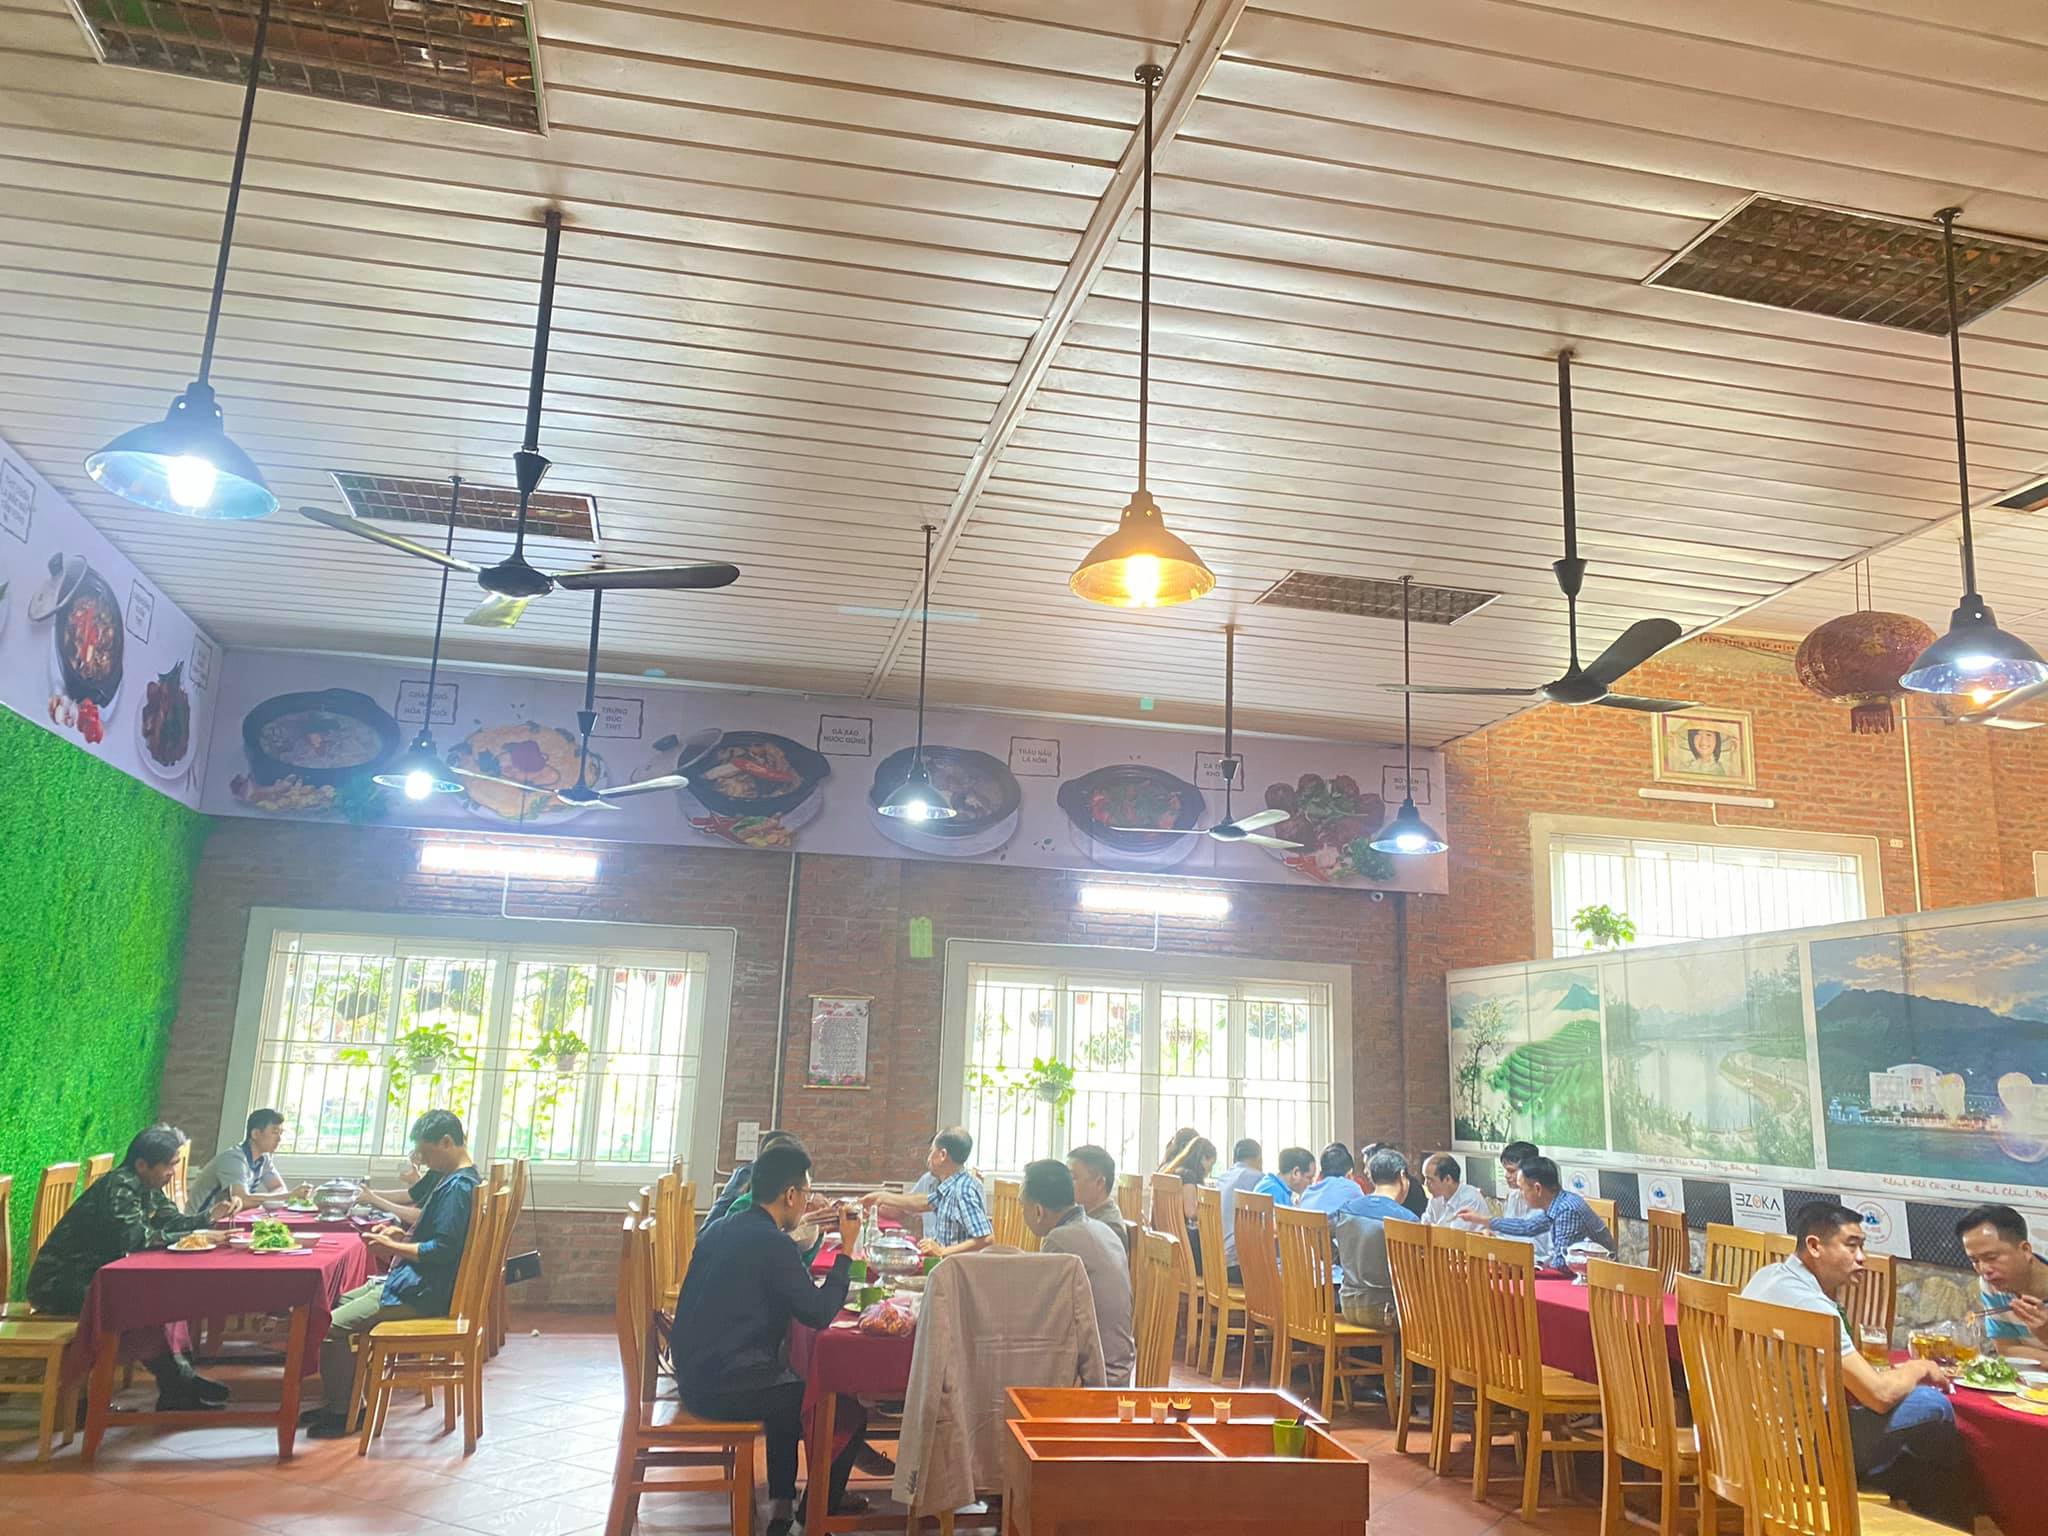 Bên trong nhà hàng 64 được bài trí đơn giản nhưng hết sức sang trọng. Tạo sự thoải mái cho du khách. 